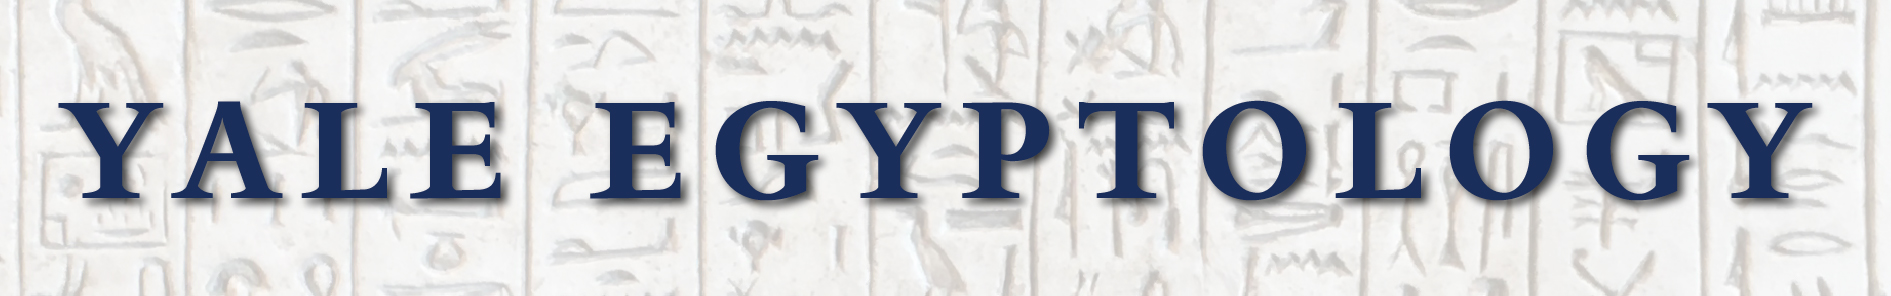 Yale Egyptology
